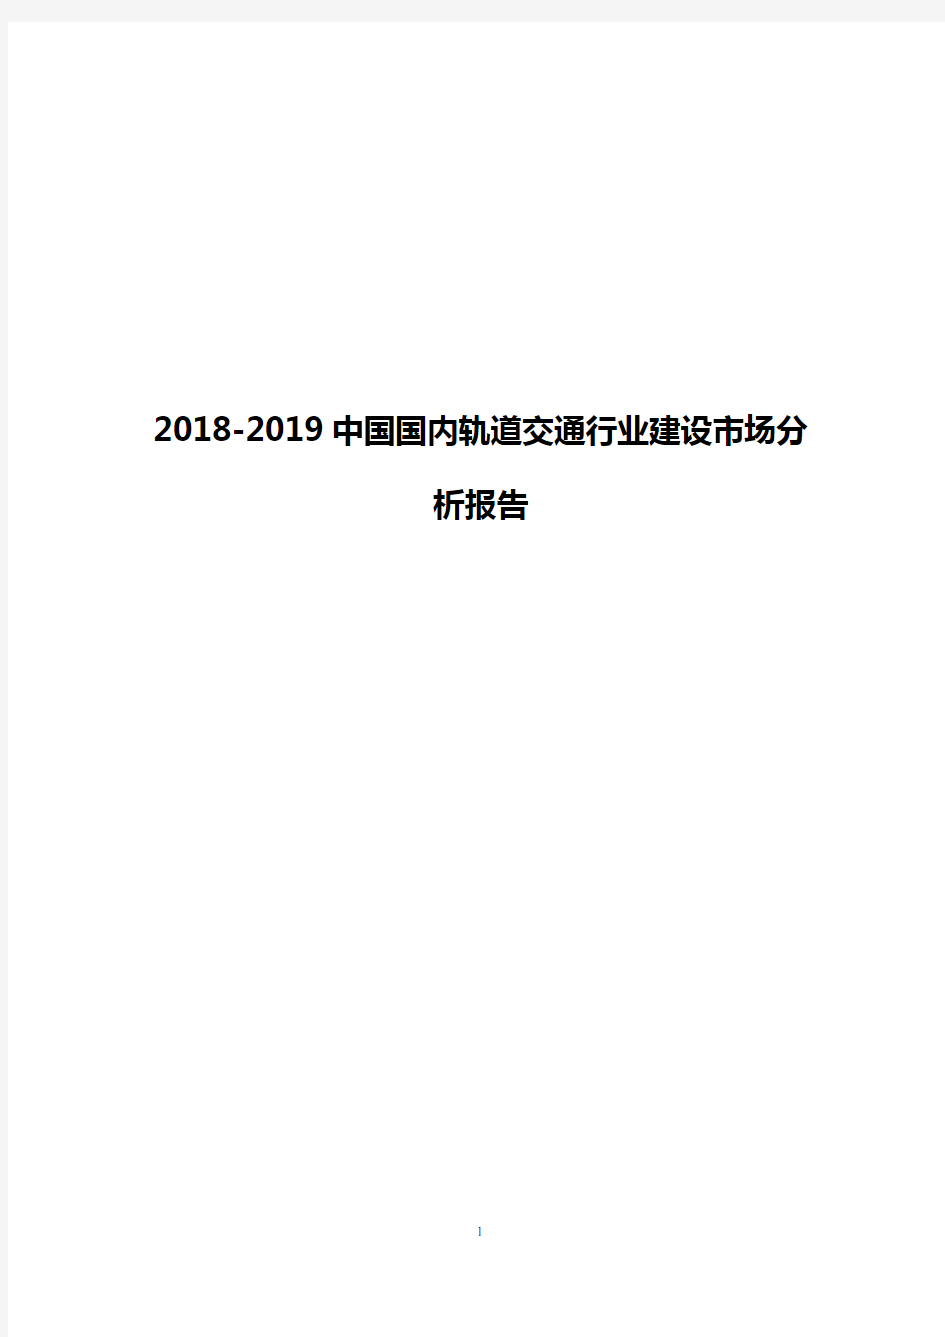 2018-2019中国国内轨道交通行业建设市场分析报告